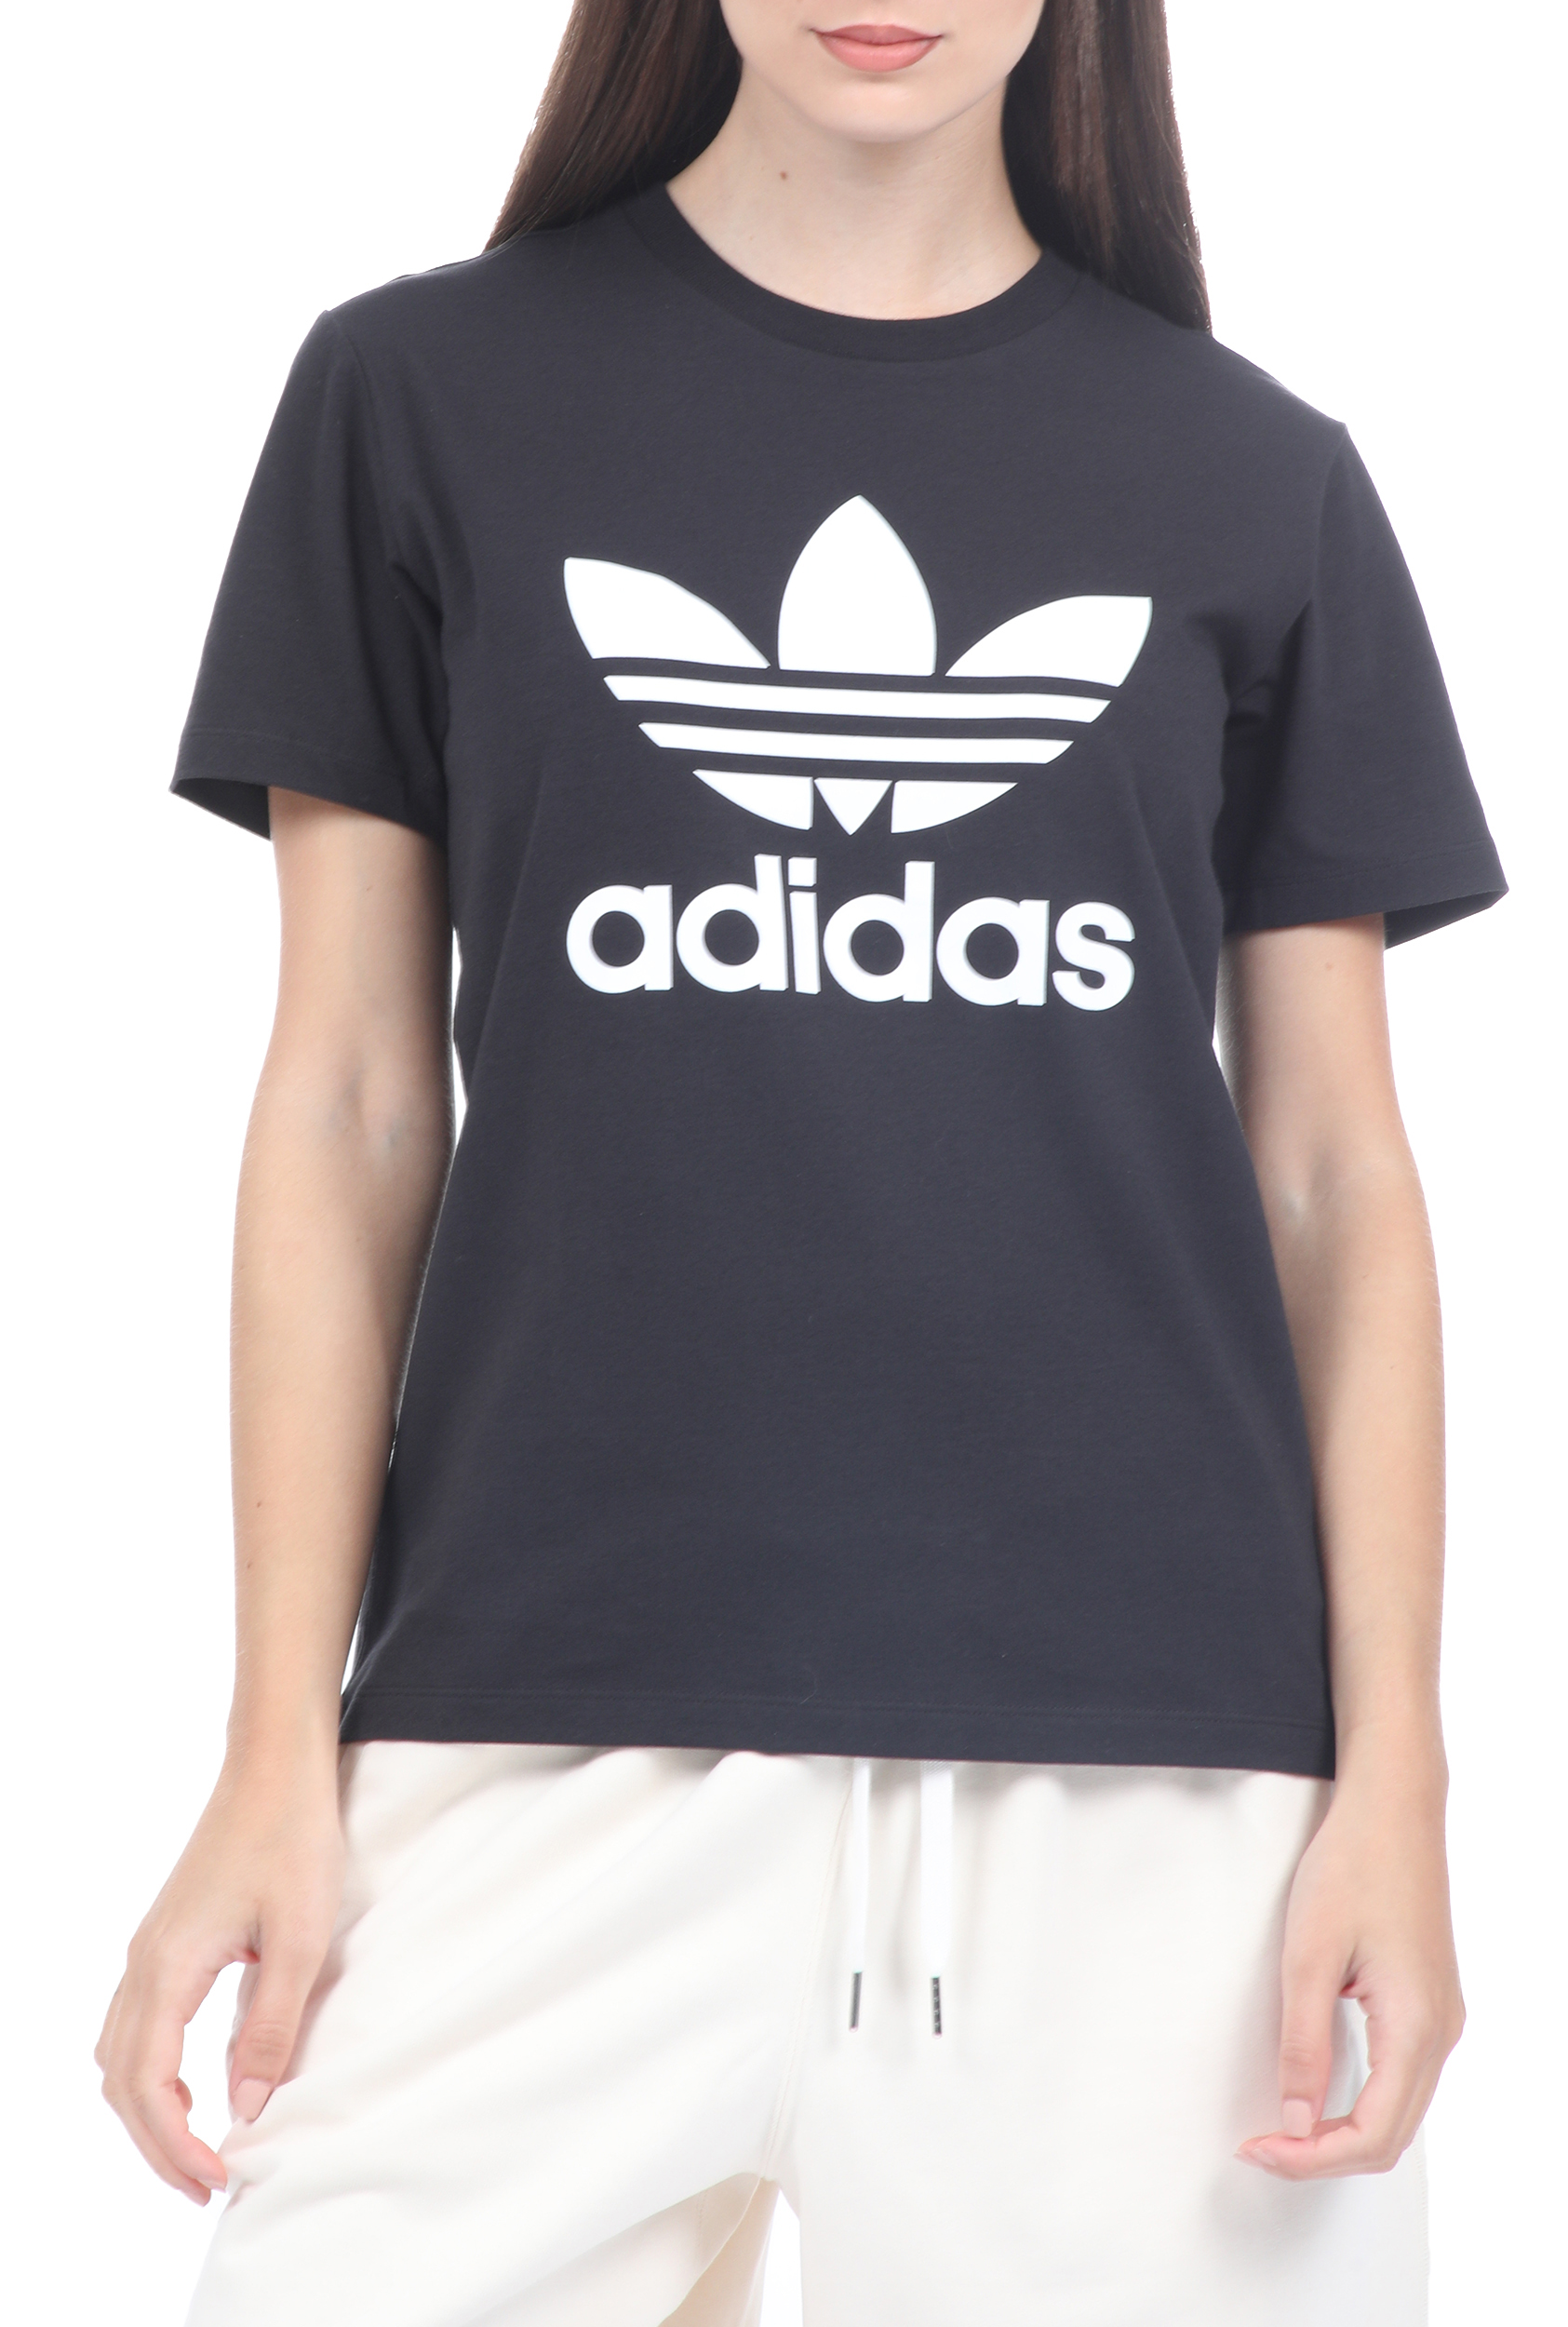 adidas Originals – Γυναικεια κοντομανικη μπλουζα Adidas Originals μαυρη